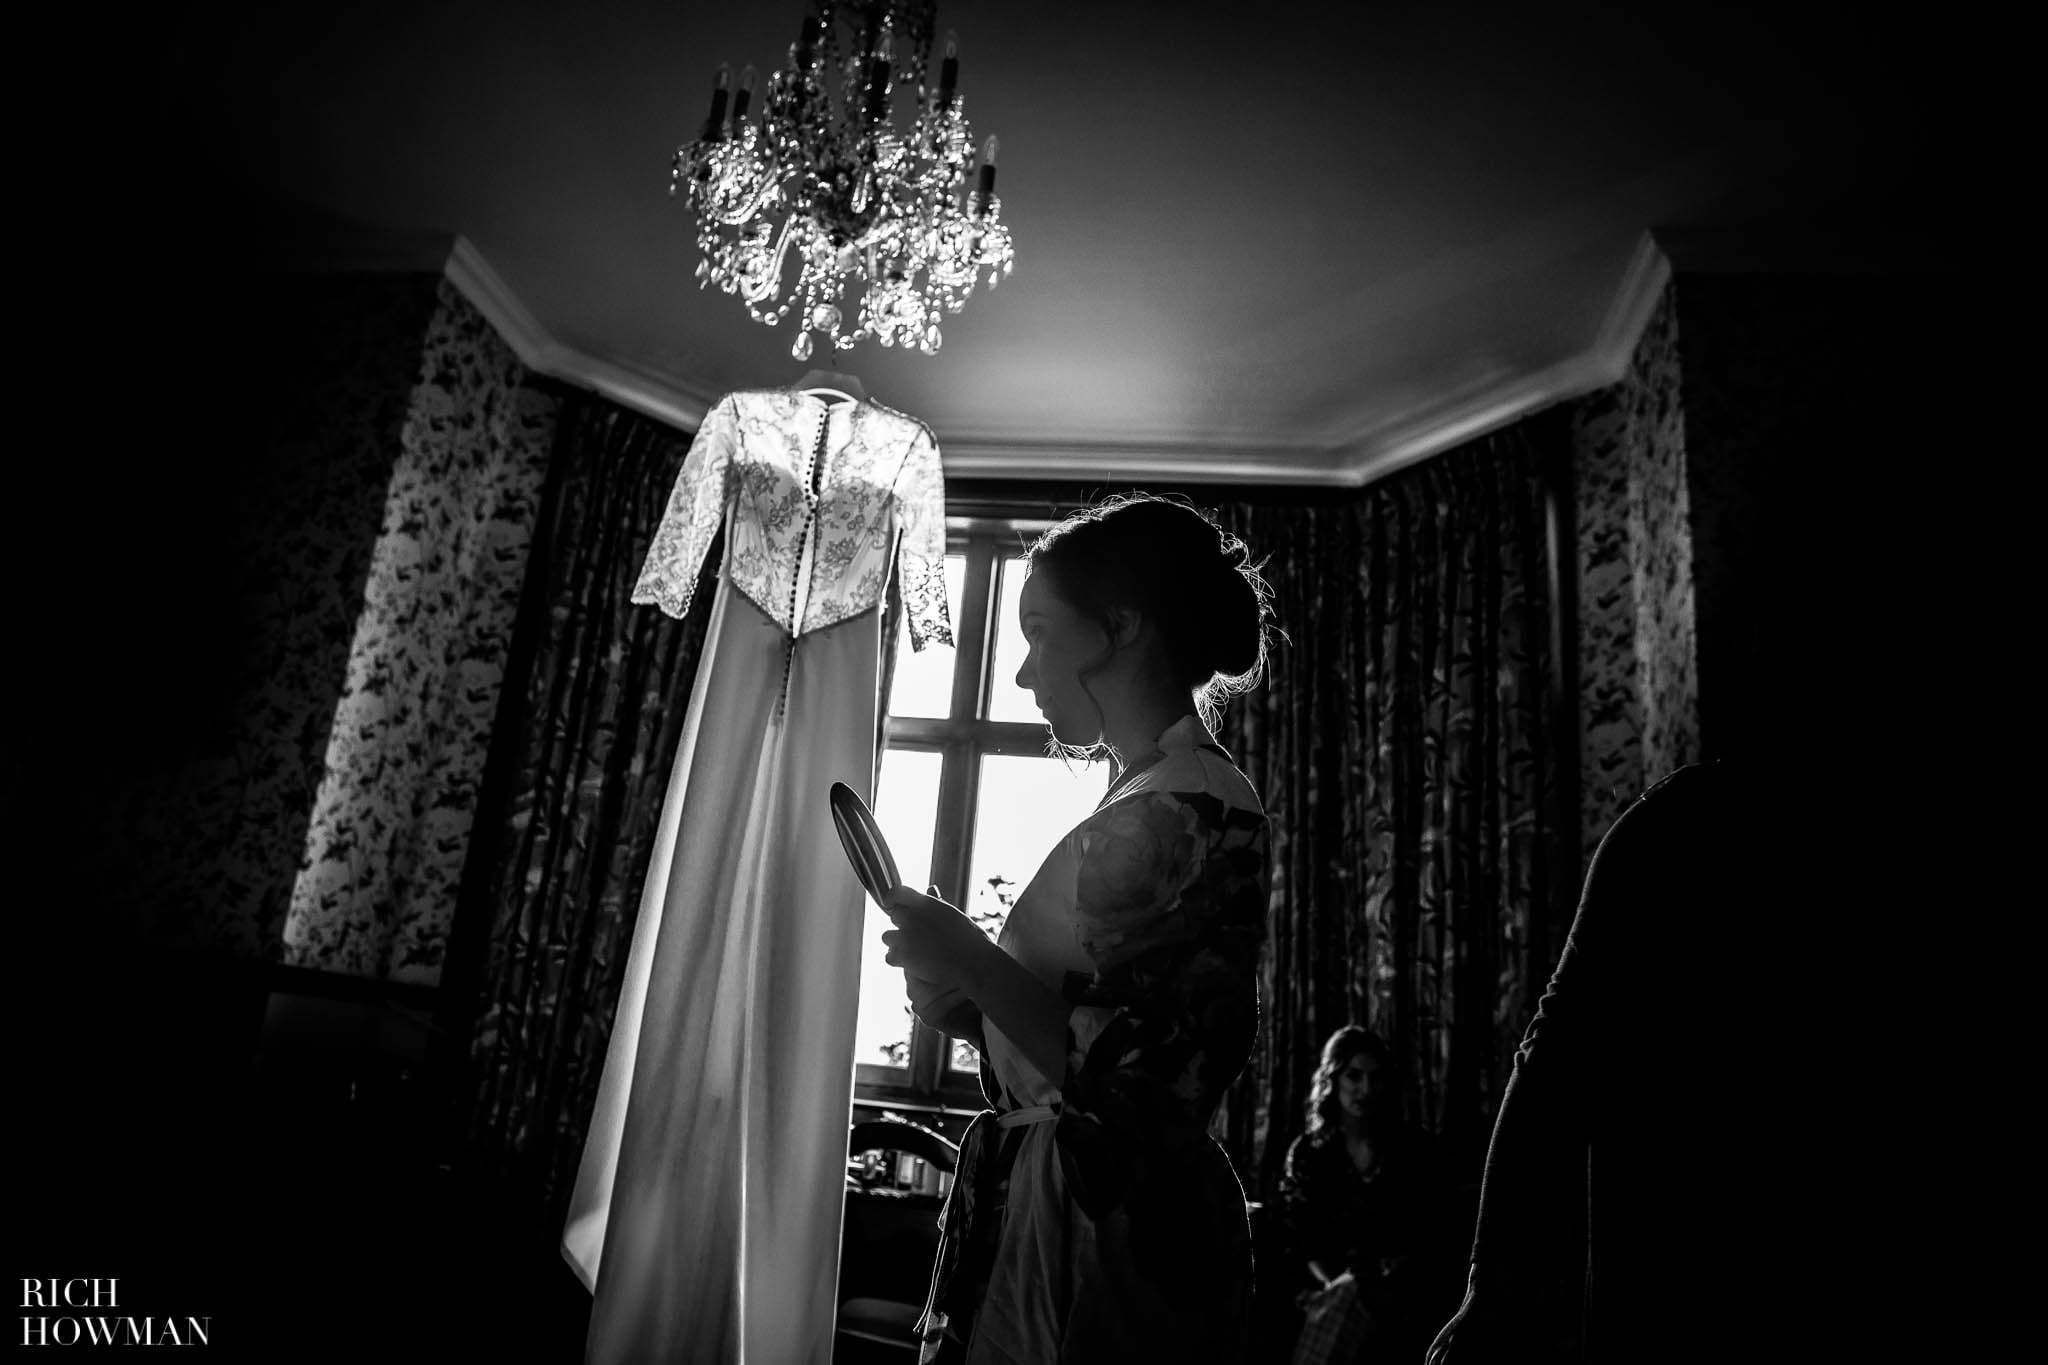 wedding dress hanging in window light, black and white photo captured byHuntsham Court wedding photographer Rich Howman